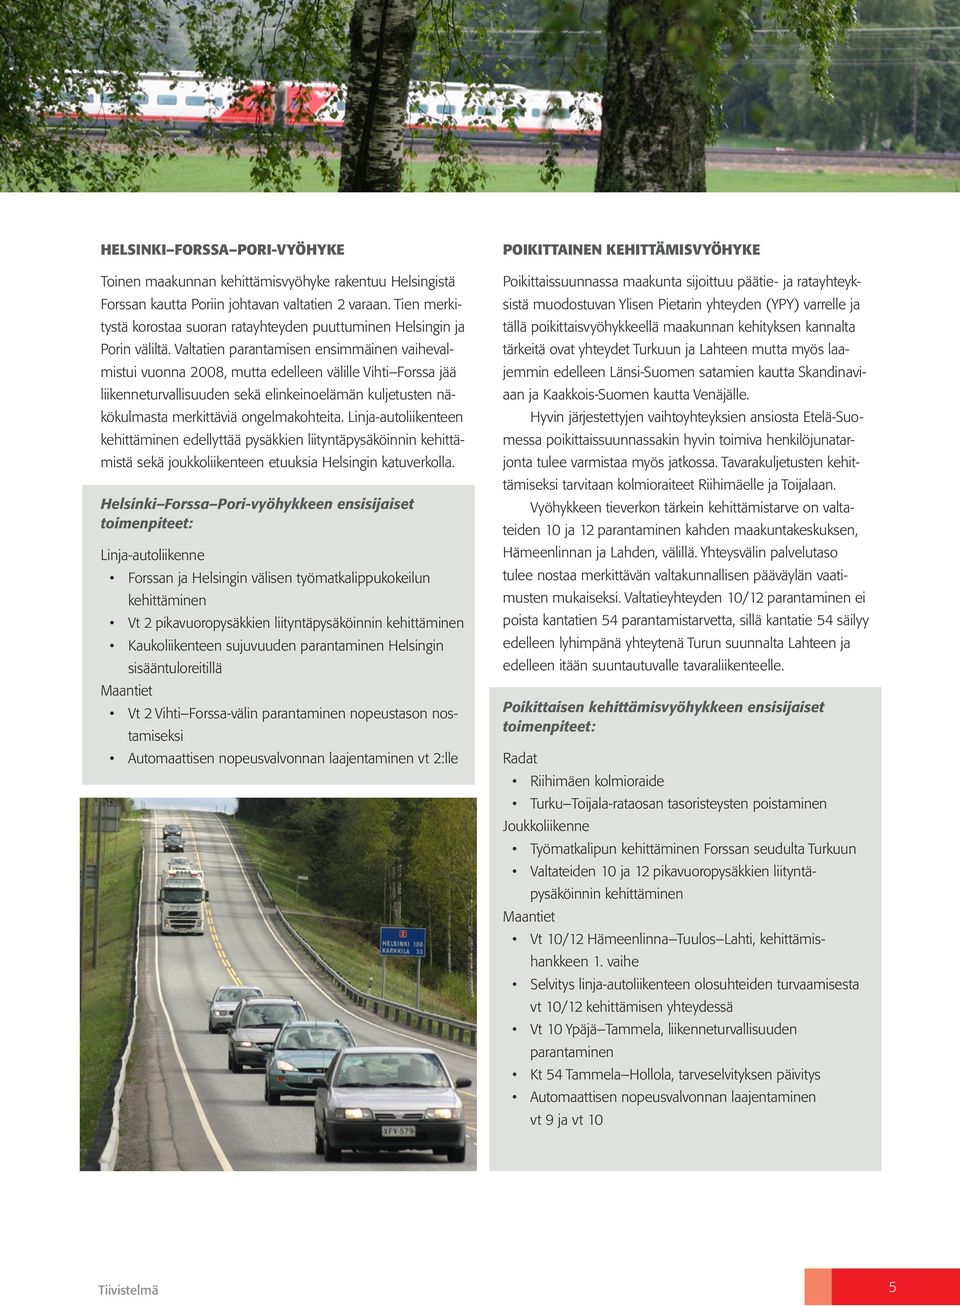 Valtatien parantamisen ensimmäinen vaihevalmistui vuonna 2008, mutta edelleen välille Vihti Forssa jää liikenneturvallisuuden sekä elinkeinoelämän kuljetusten näkökulmasta merkittäviä ongelmakohteita.